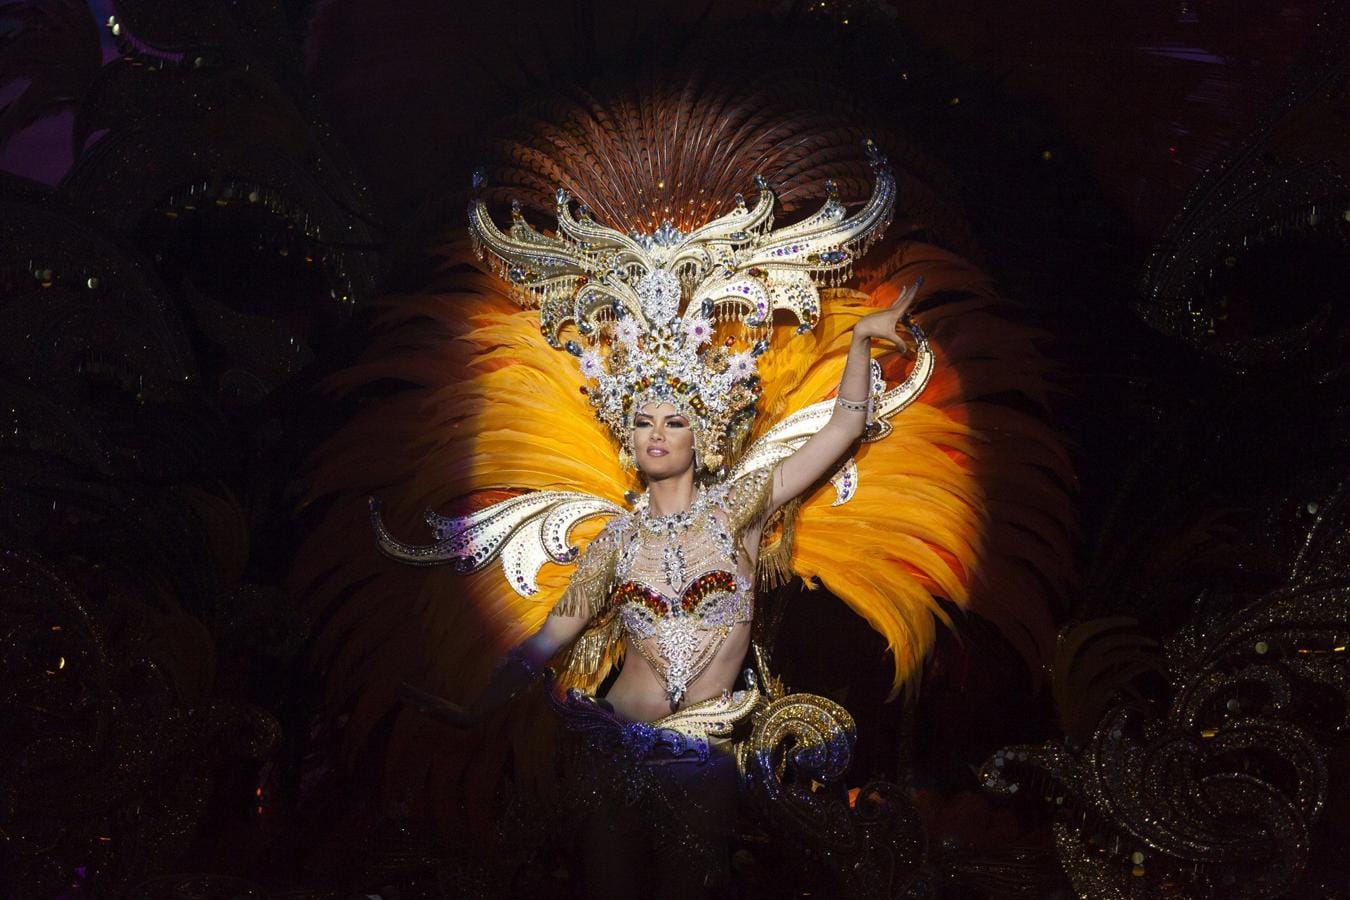 La Reina del Carnaval 2017, Judit López García, con la fantasía «Madame Soleil», durante su participación en la Gala de Elección de la Reina del Carnaval de Santa Cruz de Tenerife 